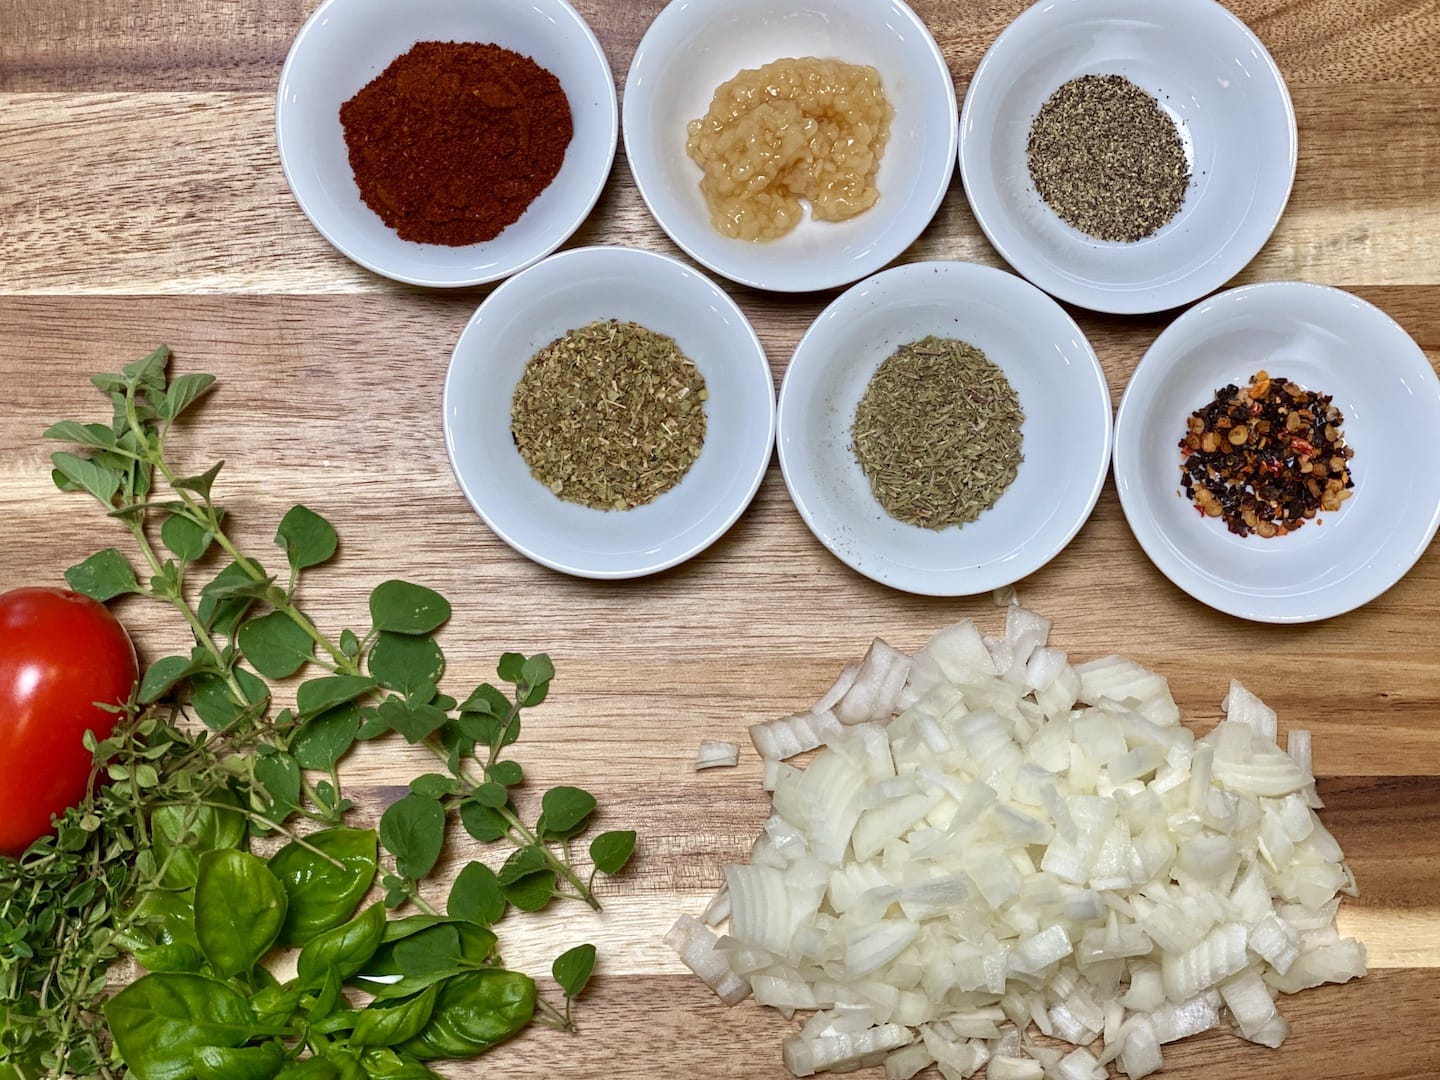 Ingredients for marinara sauce